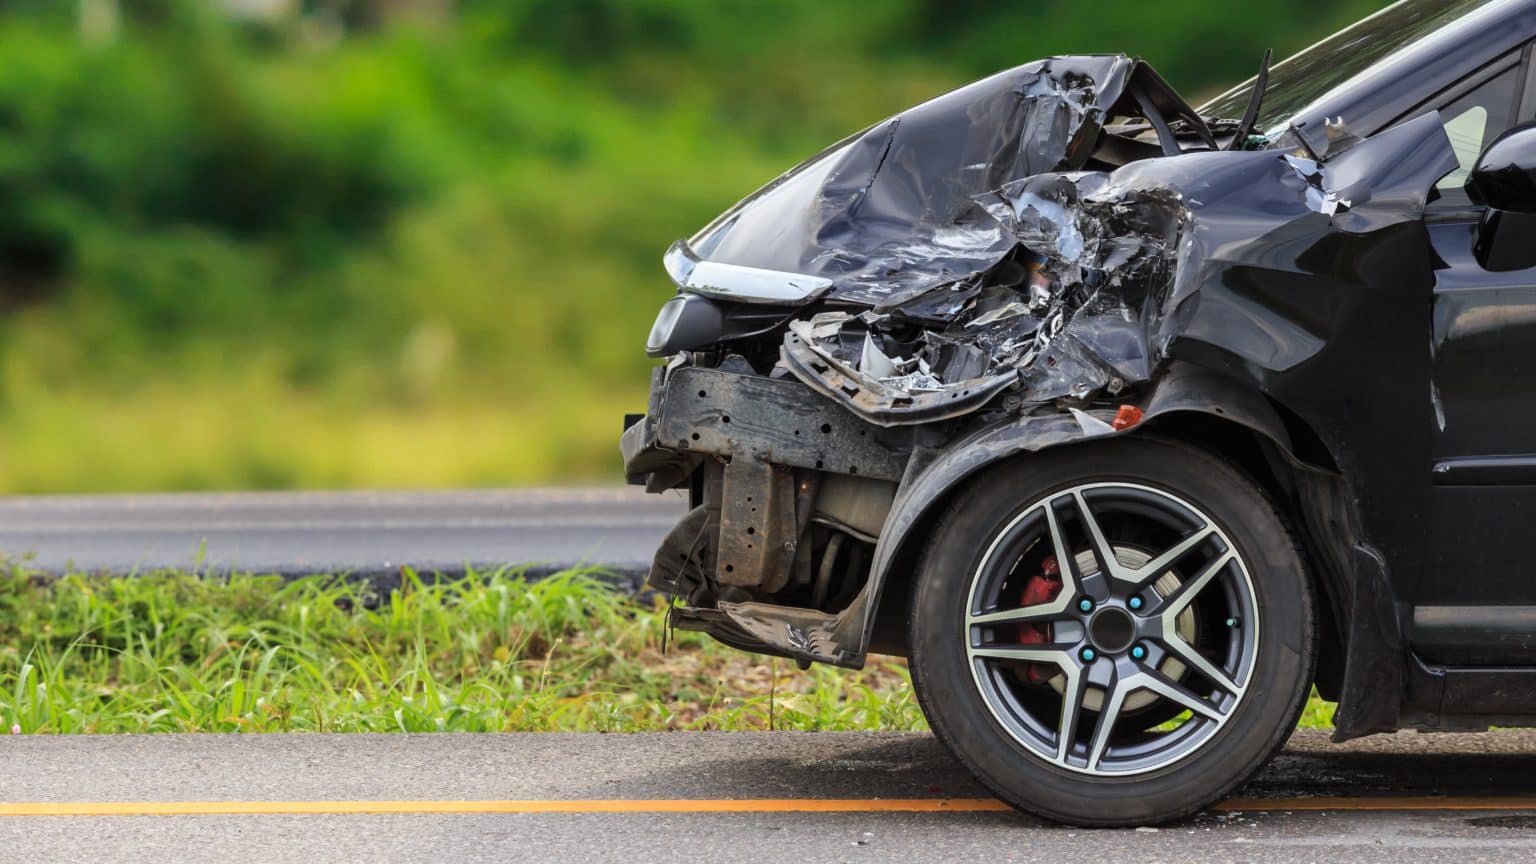 Teška prometna nesreća kod Škabrnje: Teško ozlijeđen 30-godišnjak